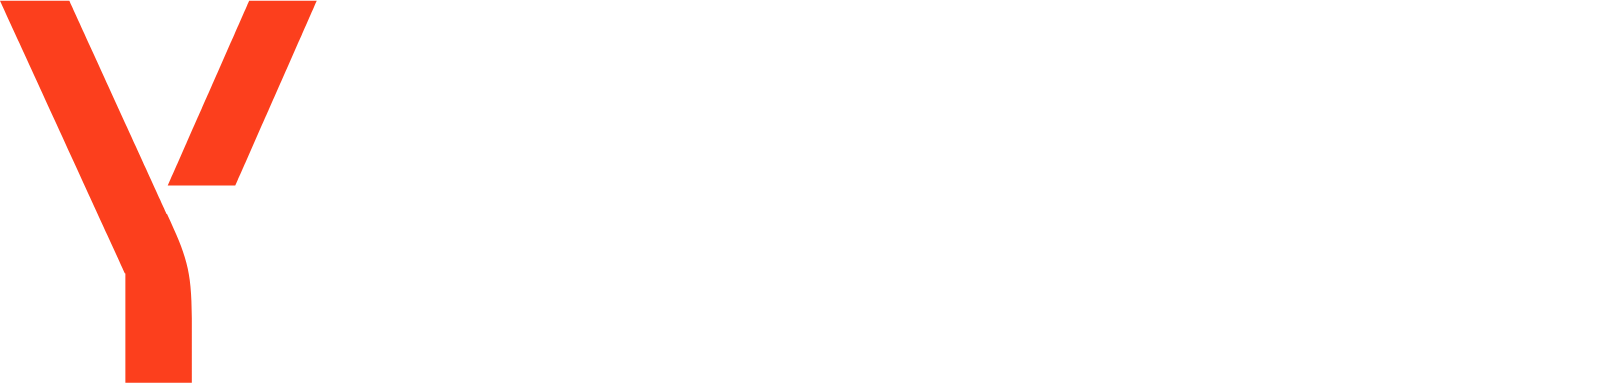 Yandex logo grand pour les fonds sombres (PNG transparent)